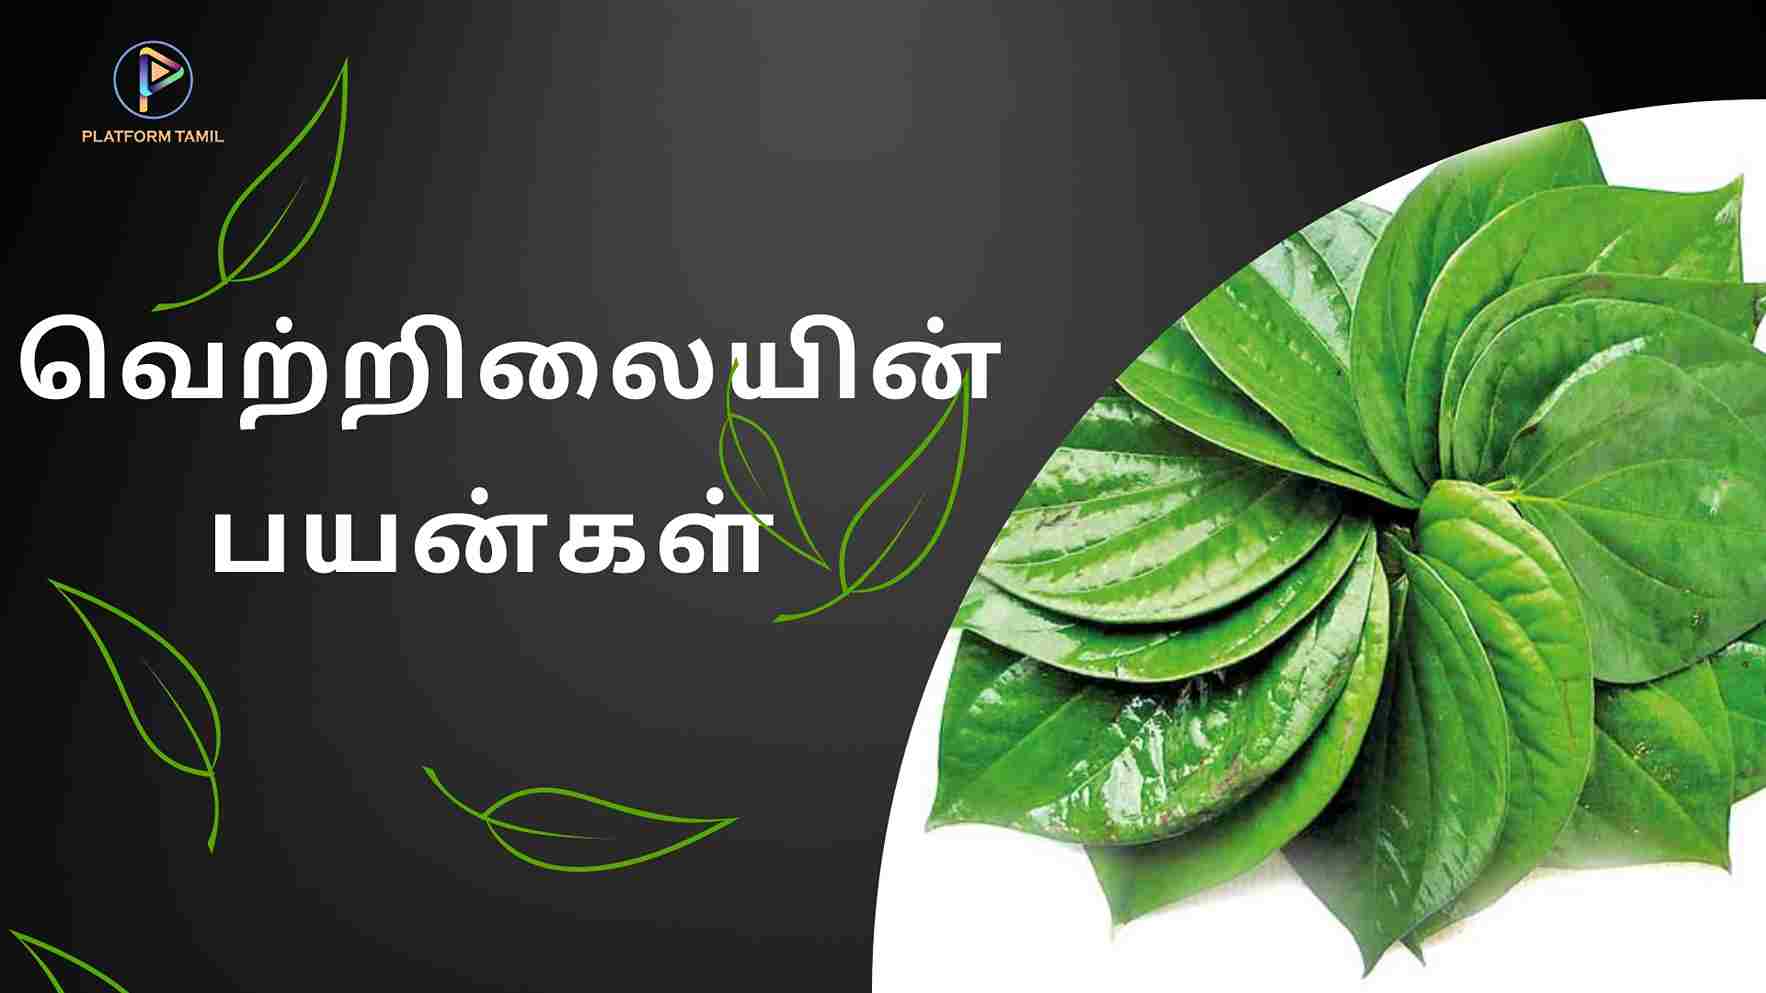 Betel Leaf in Tamil - Platform Tamil